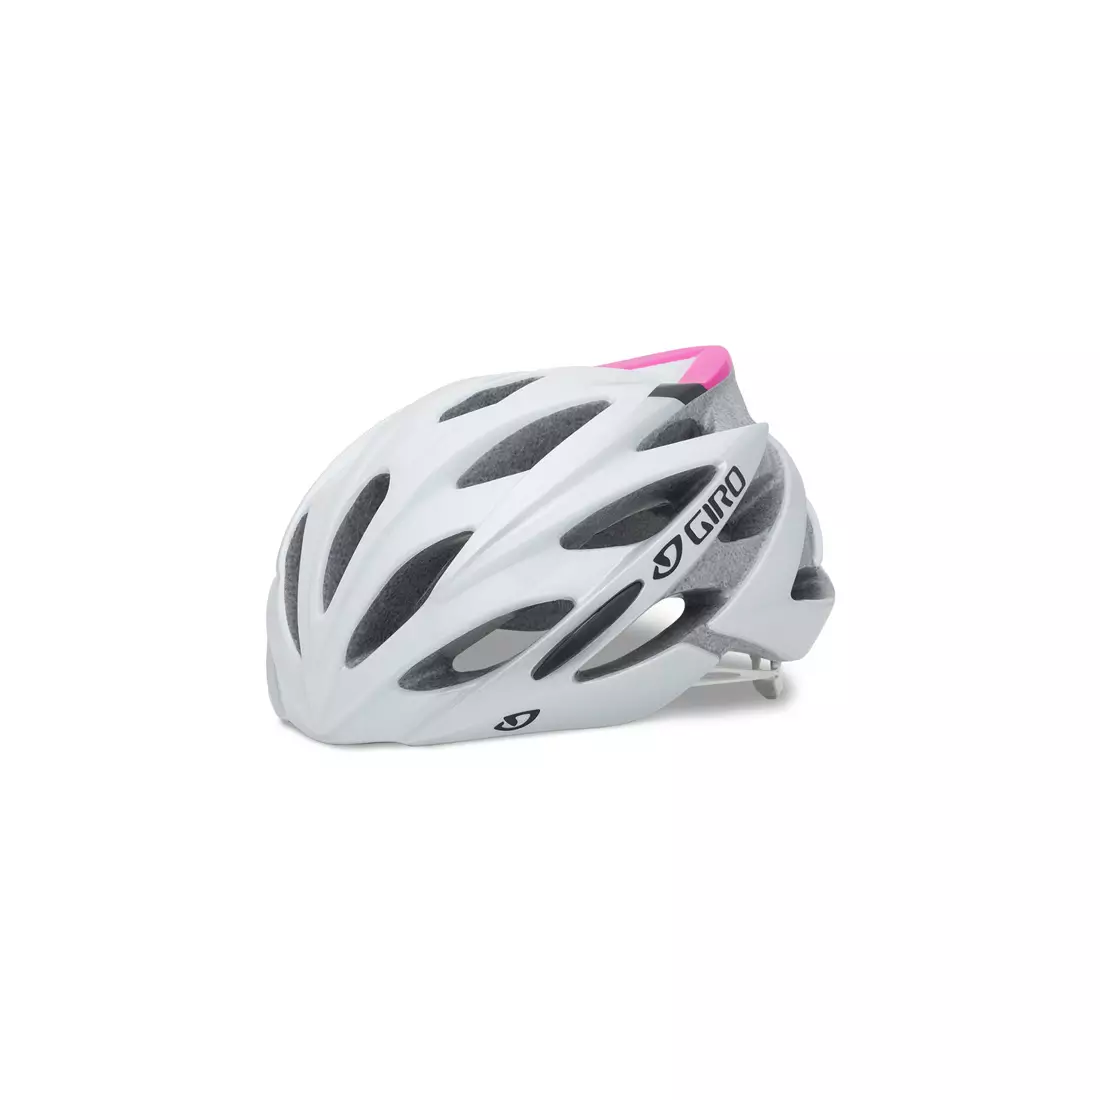 Casca de bicicleta dama GIRO SONNET, alb si roz